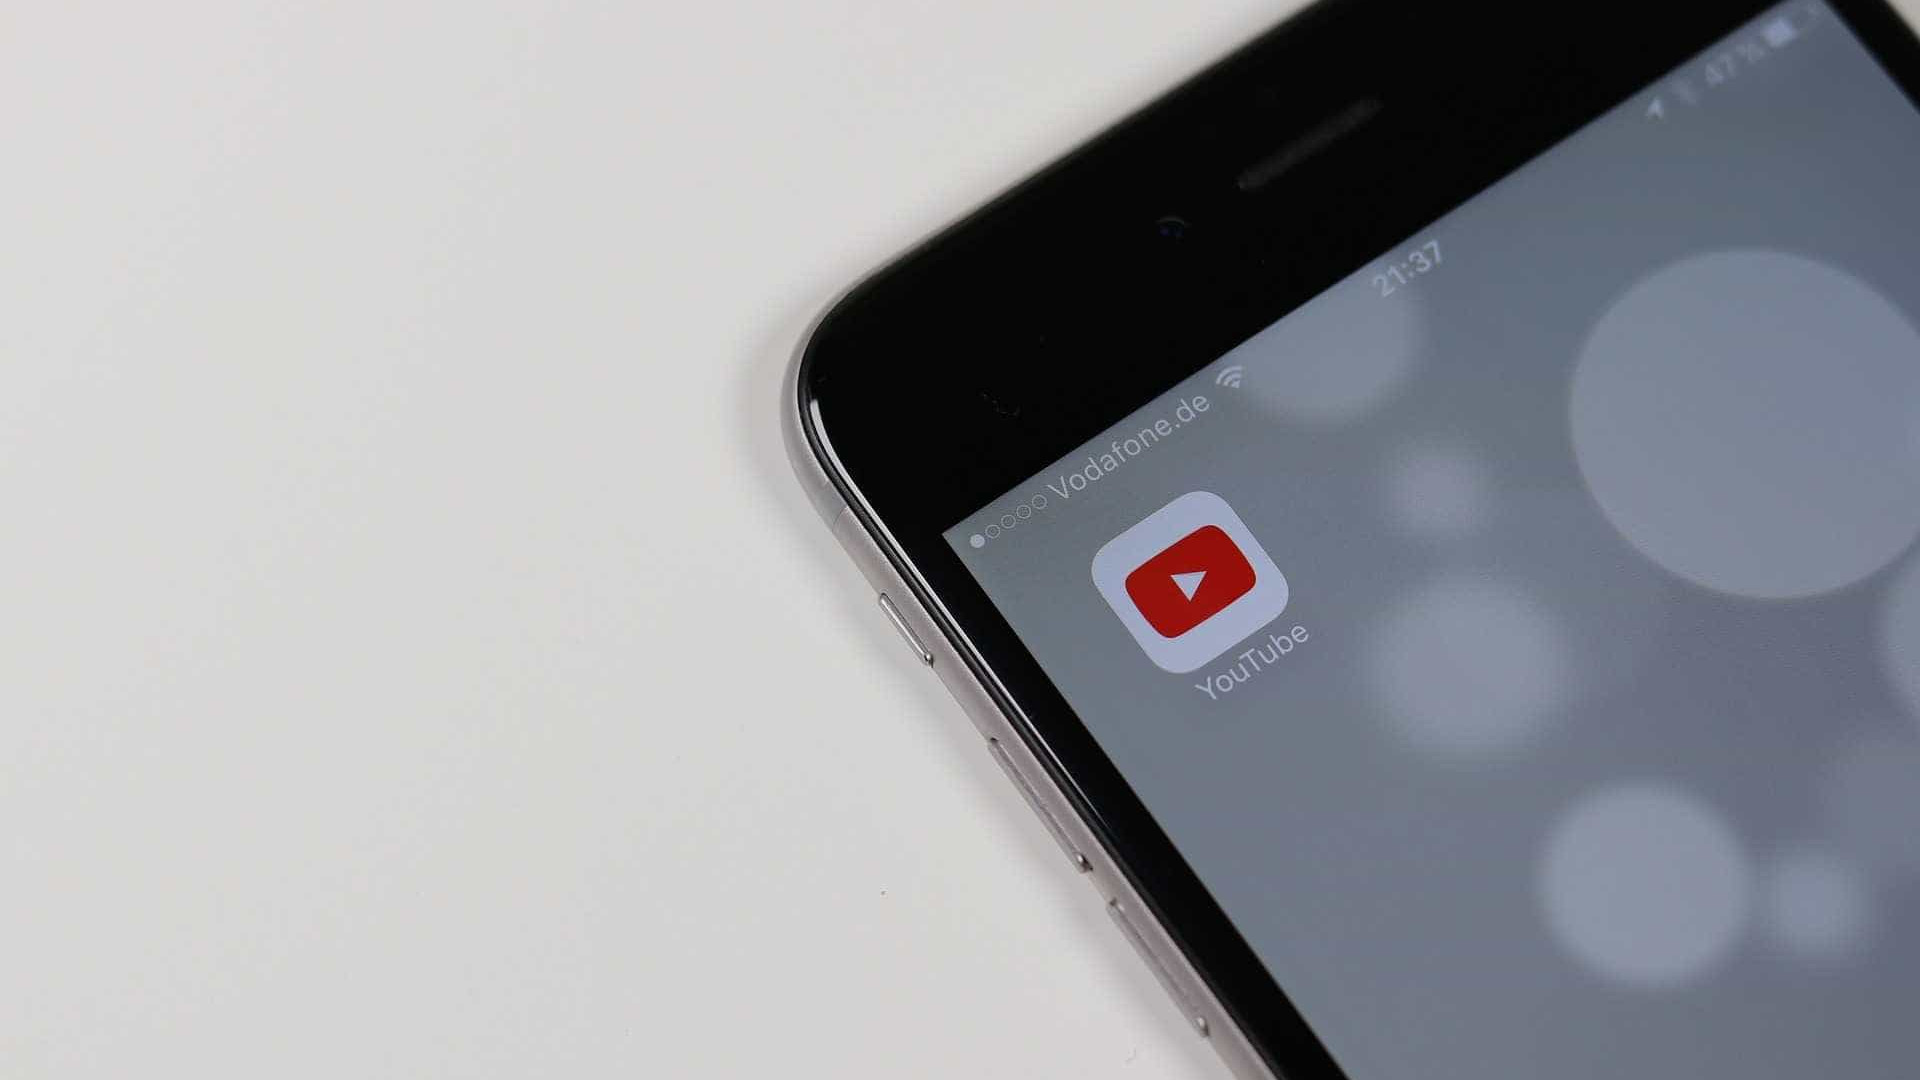 Agora é possível assistir vídeos do YouTube no celular sem internet